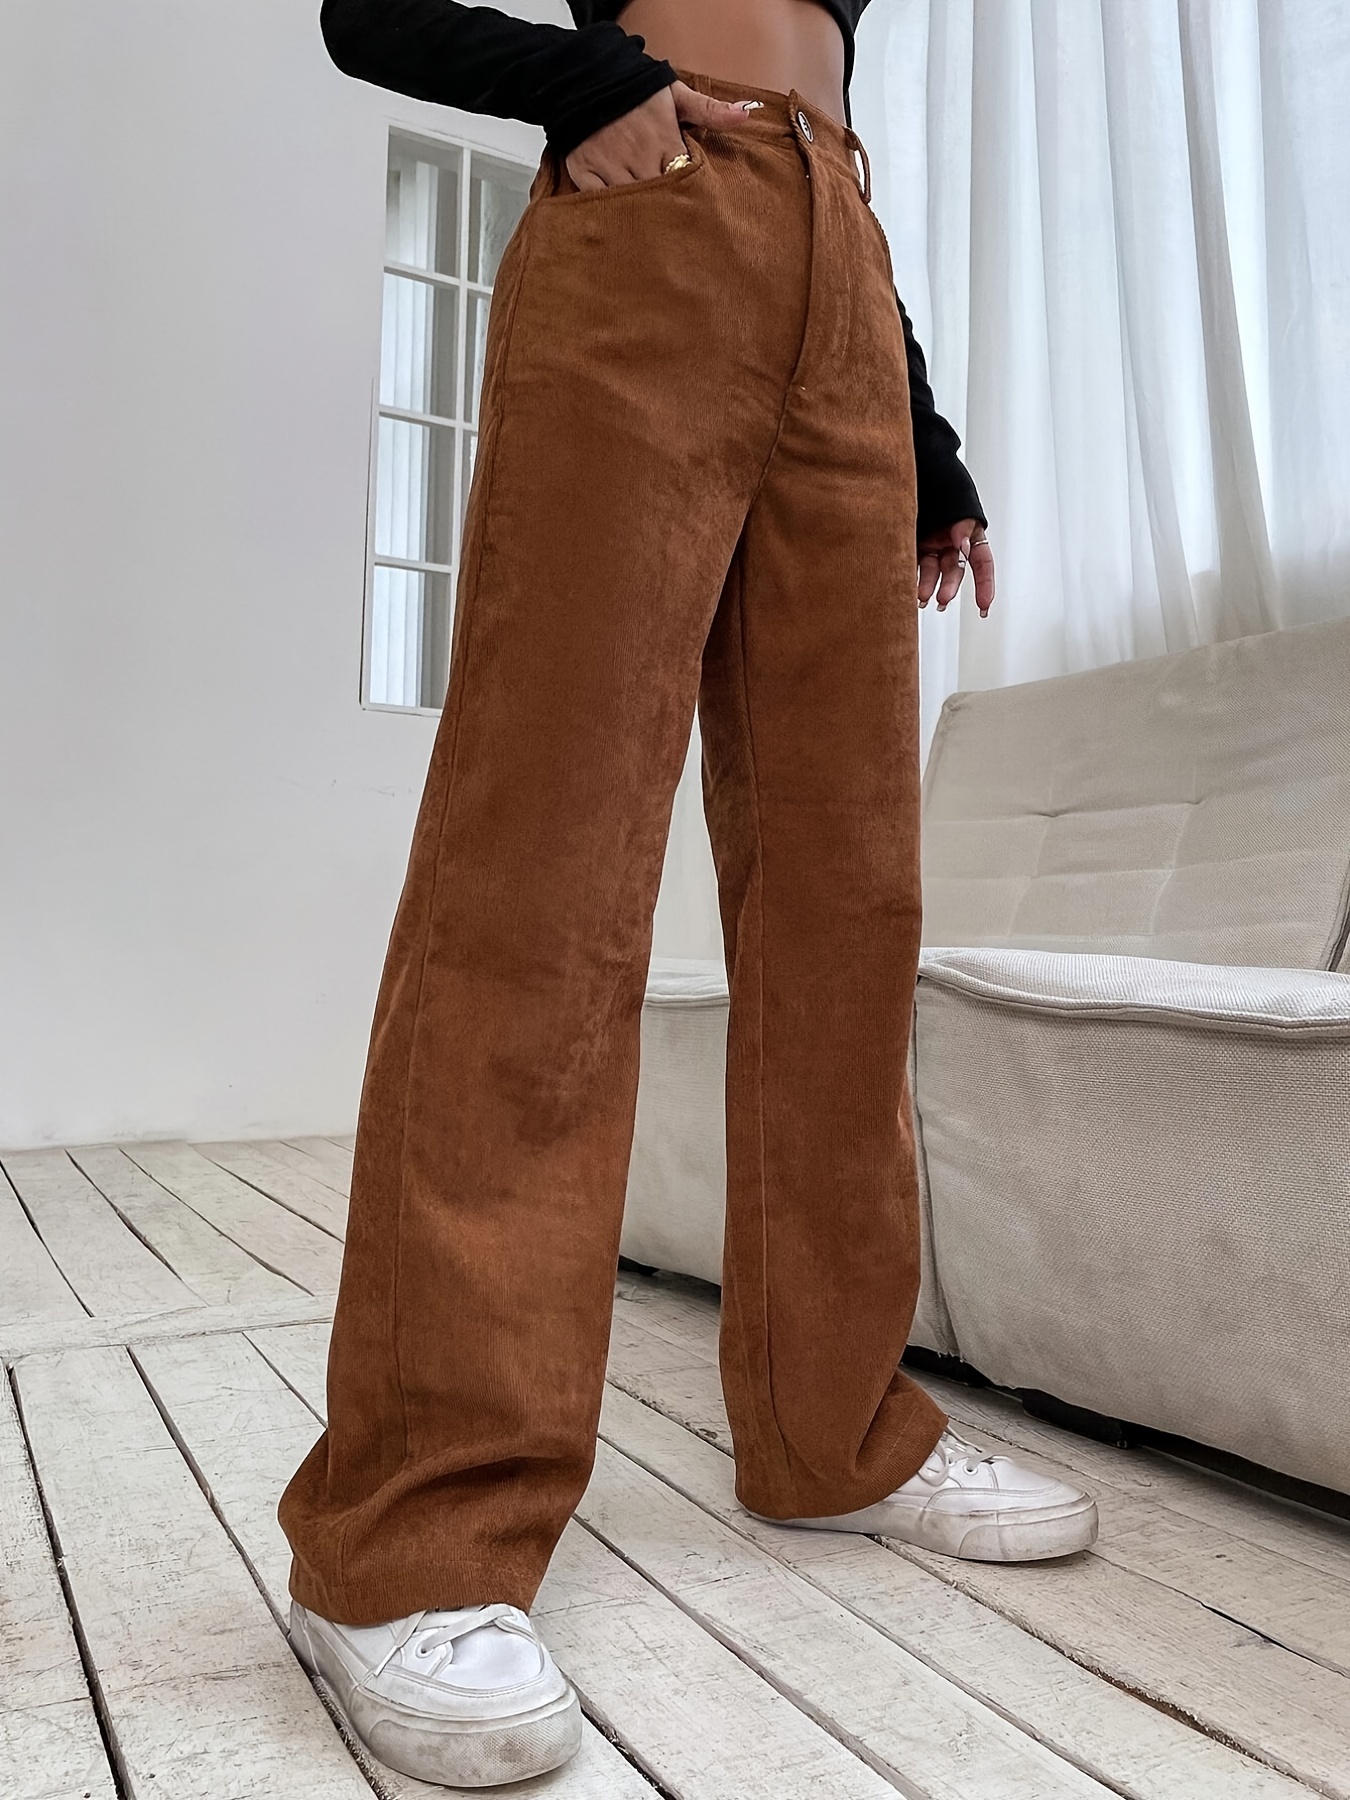 Corduroy Pants - Dark brown - Ladies